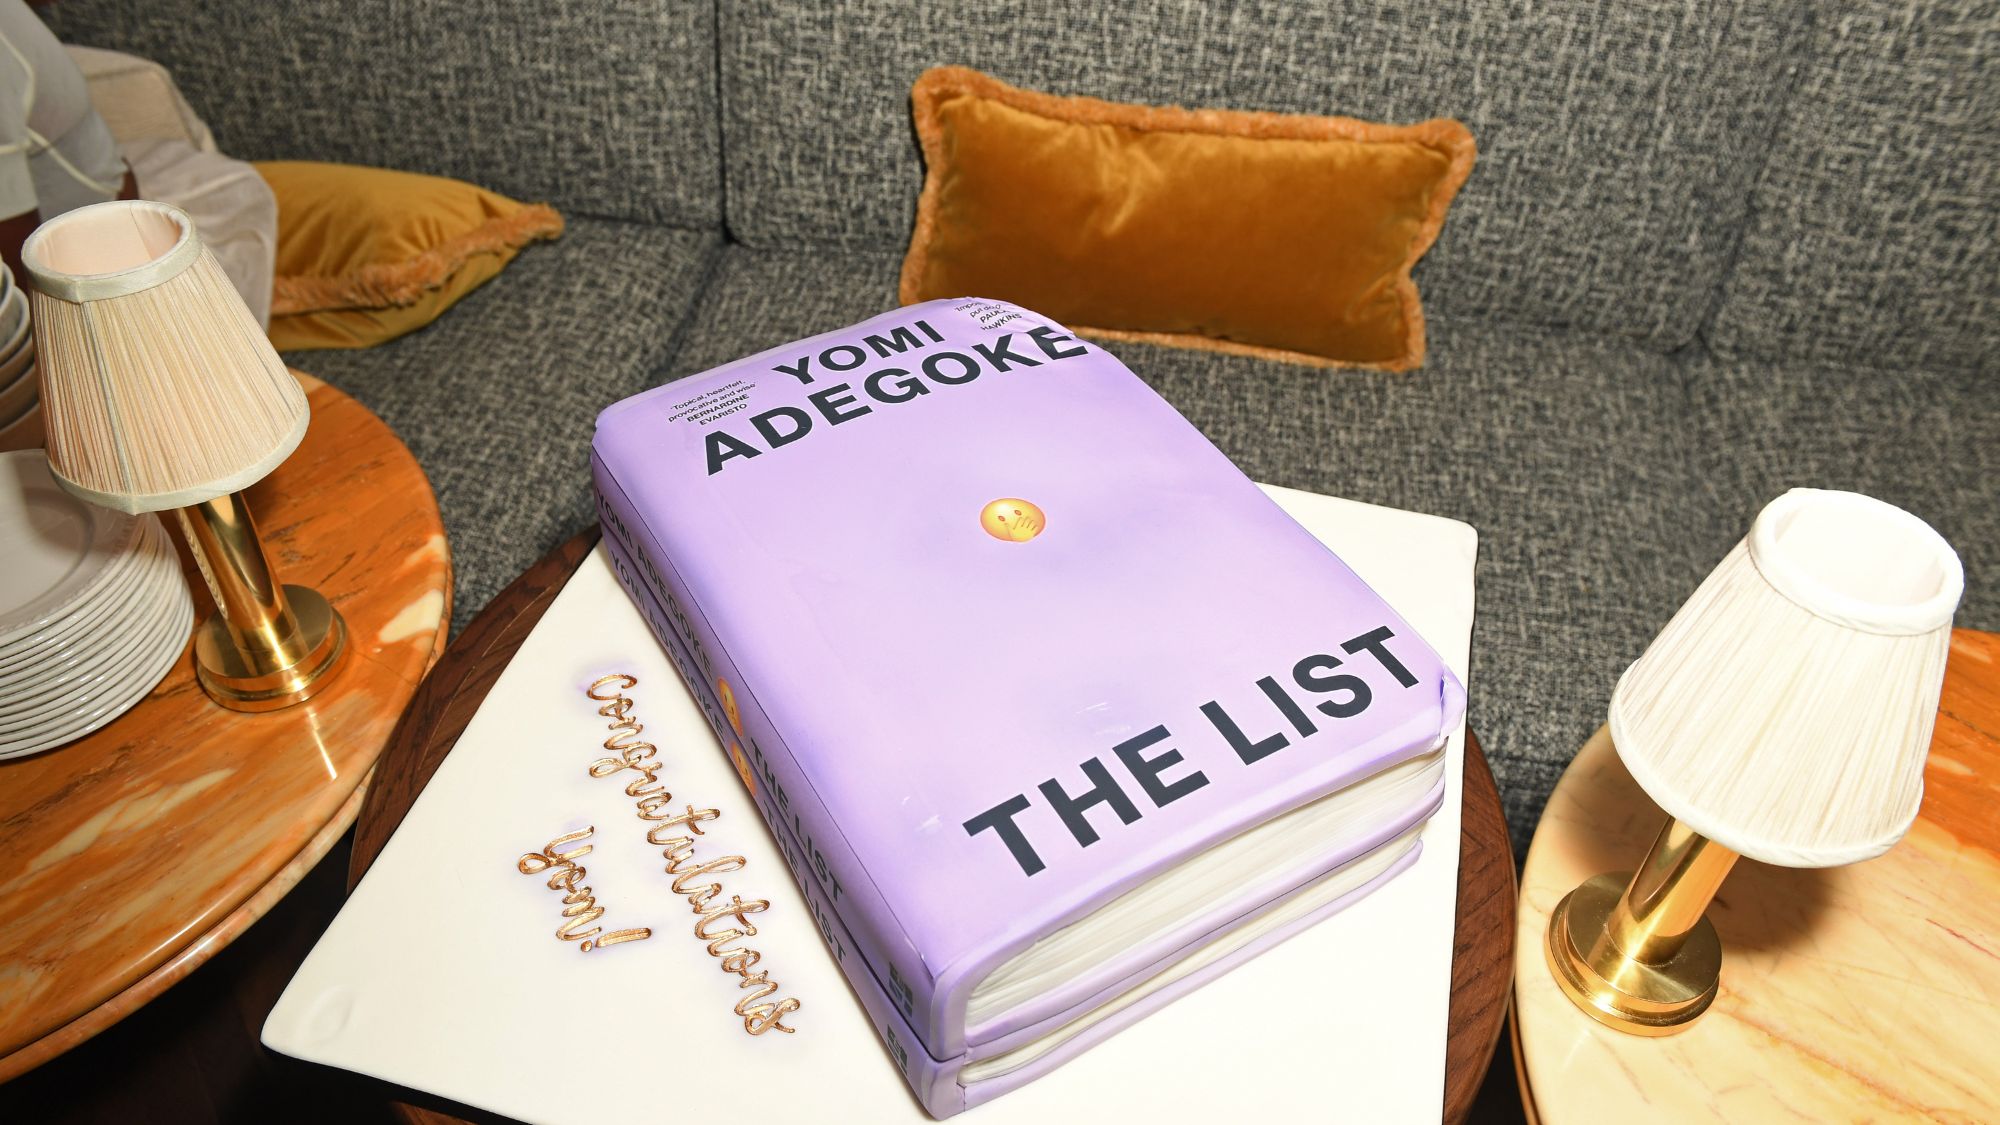 A cake shaped like The List by Yomi Adegoke